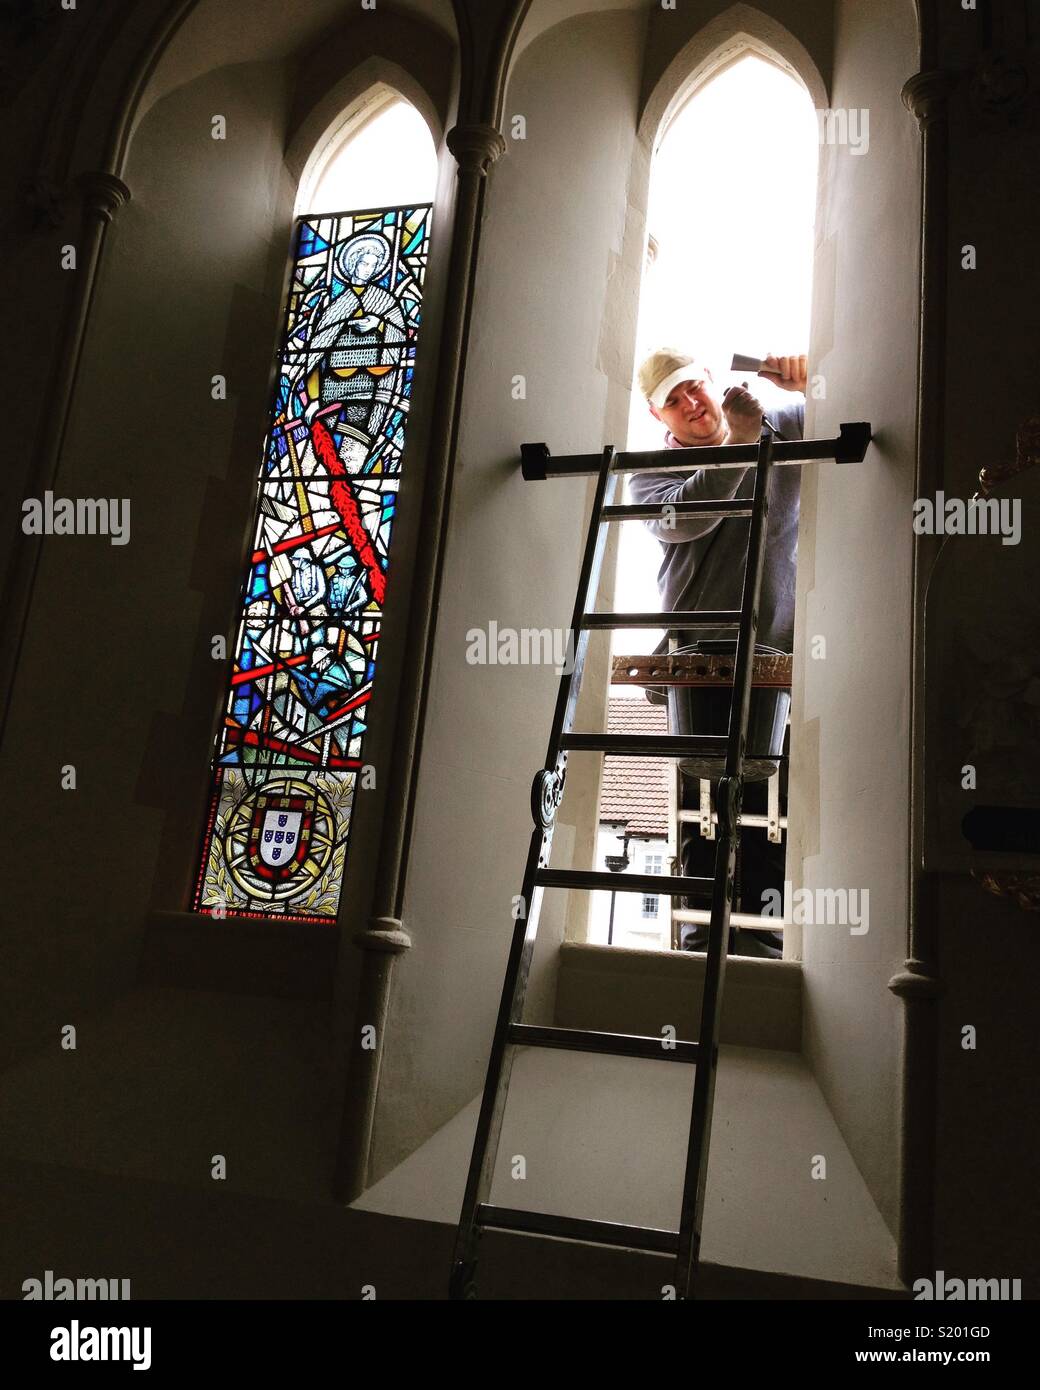 Il montaggio di nuovi vetrata pannello con una prima Guerra Mondiale / I Guerra Mondiale / ww1 tema, in una chiesa del Regno Unito. La finestra è stata progettata da vetraio & artista Caroline Benyon Foto Stock